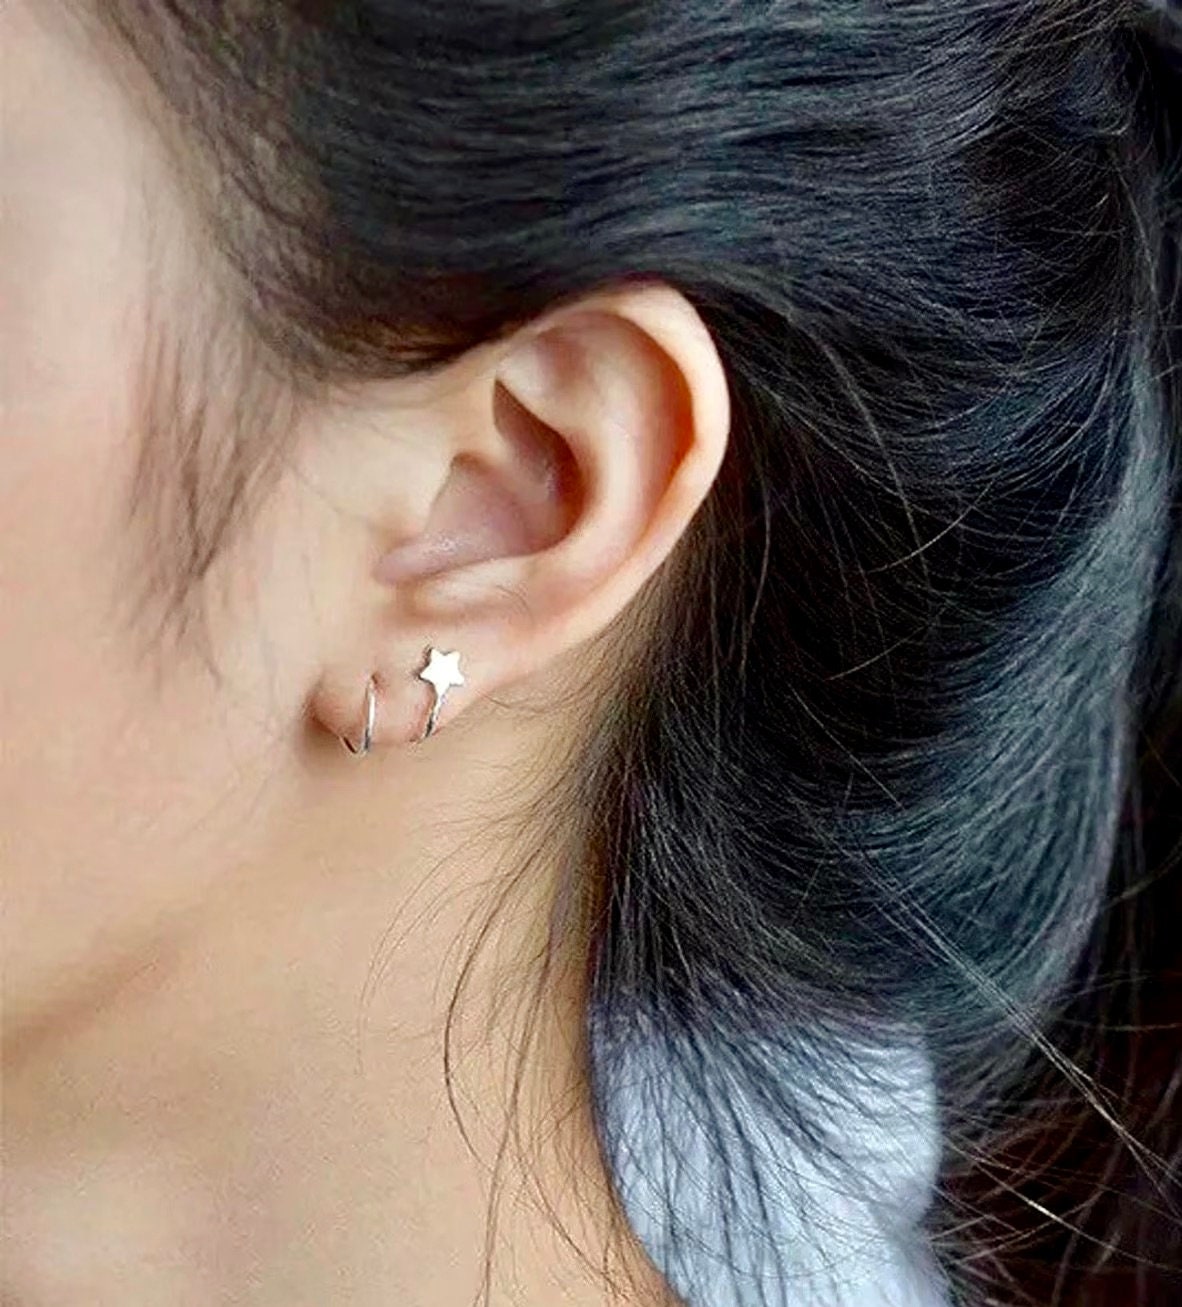 Double Spiral Barbell Earrings Twister Ball Piercing Helix Steel Earring  Jewelry